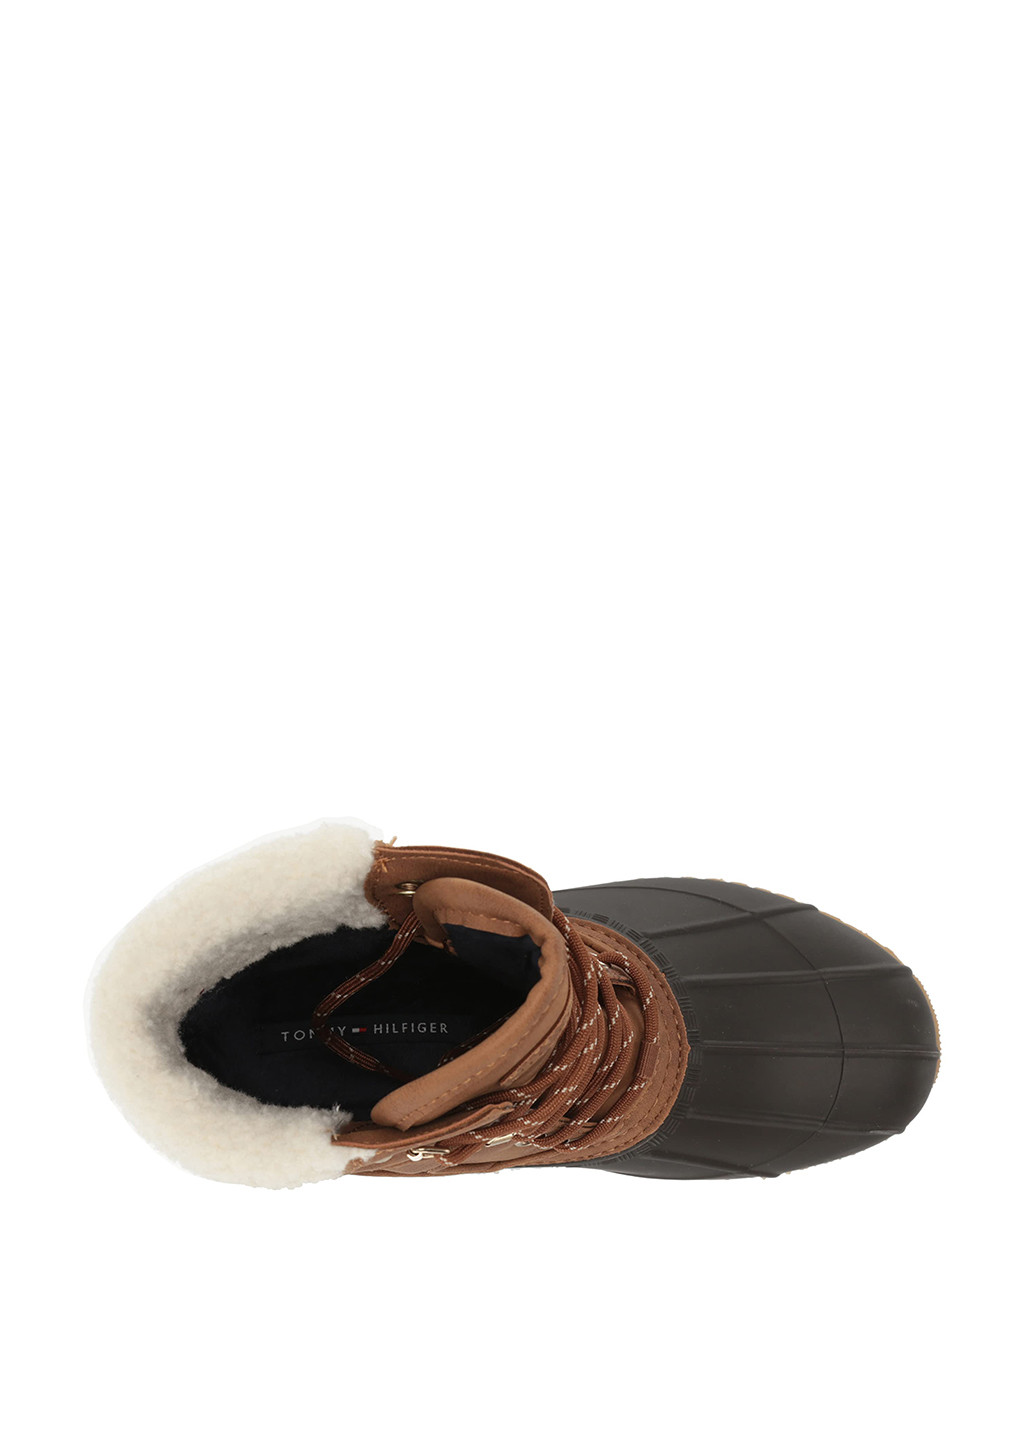 Зимние ботинки Tommy Hilfiger с мехом резиновые, из искусственной кожи